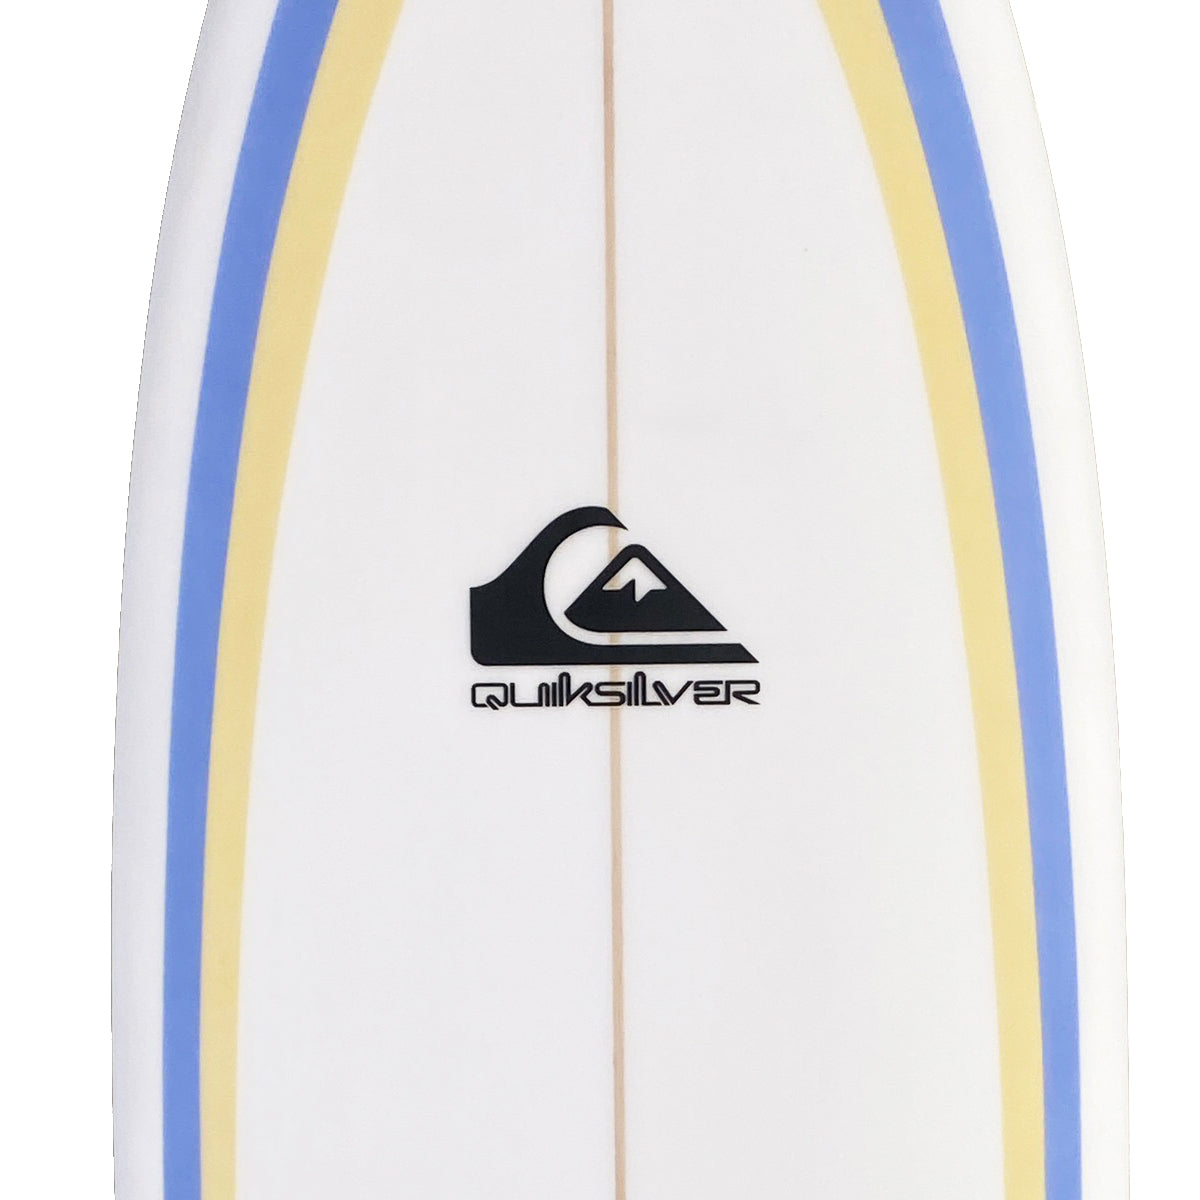 QS BADBOARD 6'0 SURFBOARD